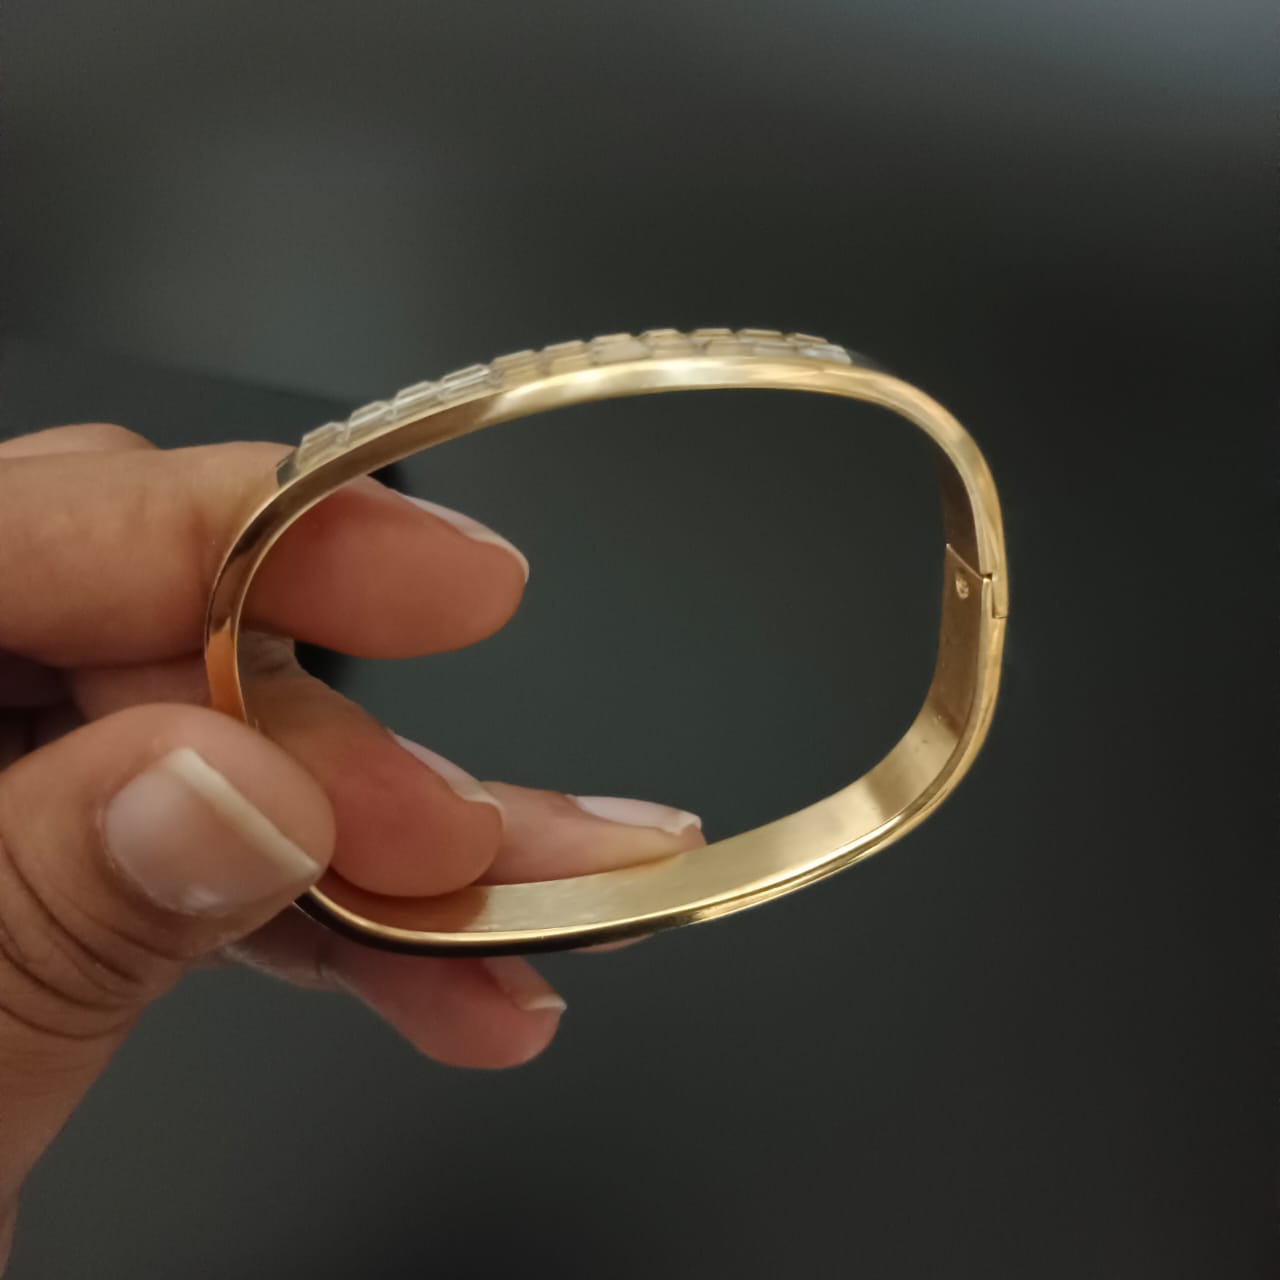 New Golden Rectangular Style Design Diamond Bracelet For Women and Girl-Jack Marc